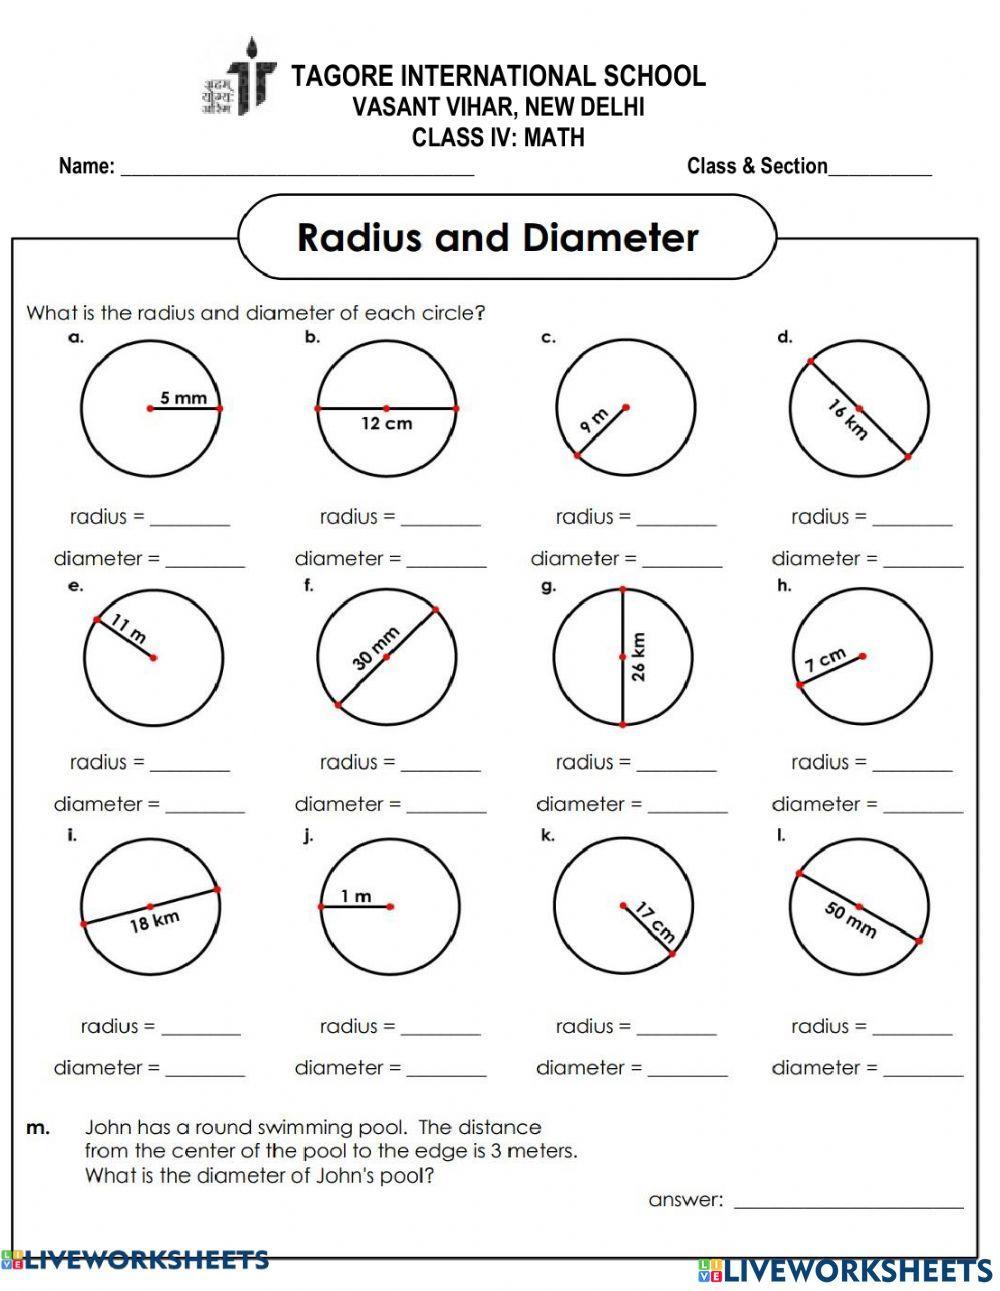 Radius & diameter